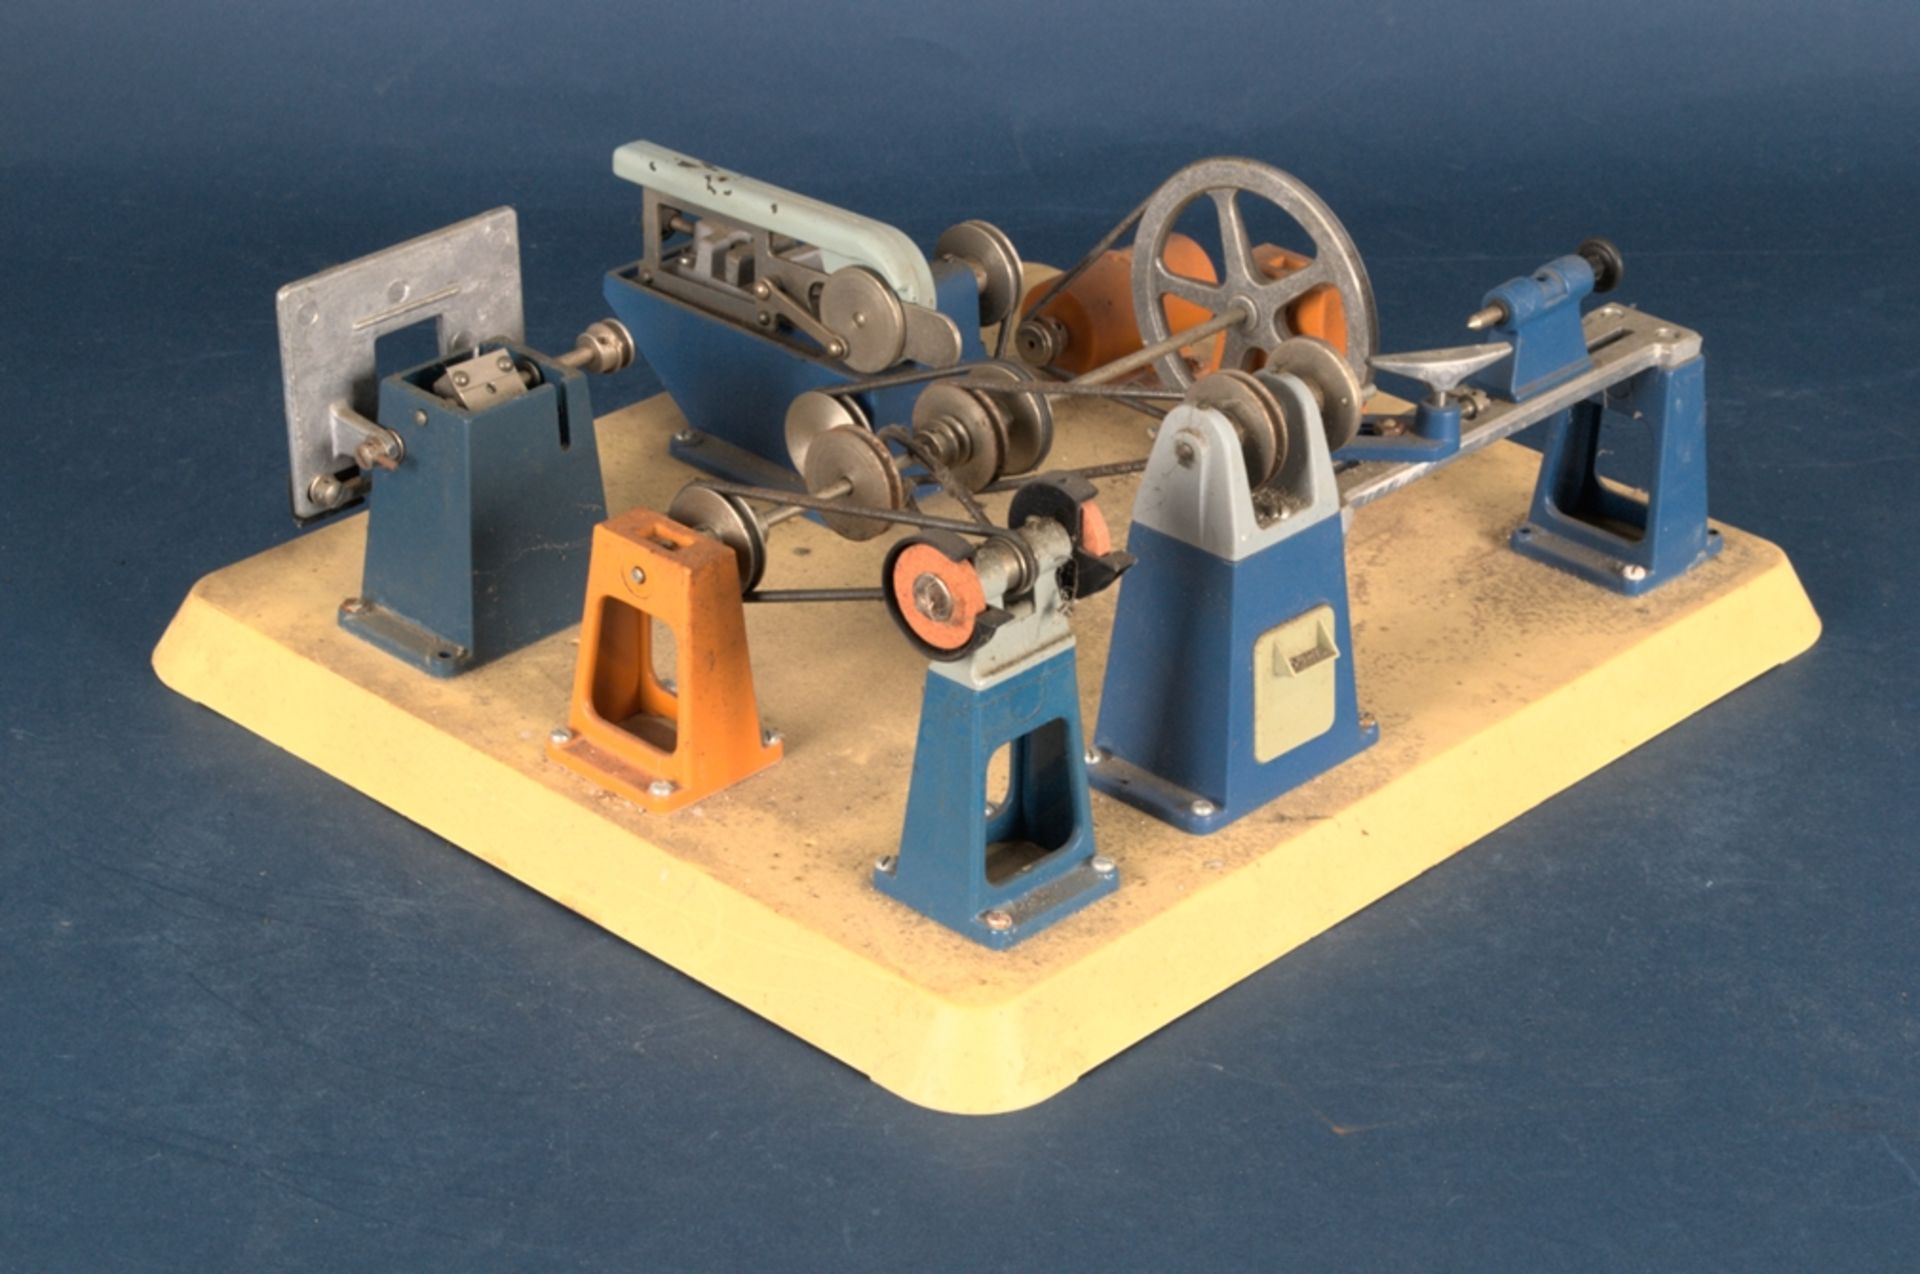 6teiliges Set versch. Dampfmaschinen-Anbauteile, ungemarkt/ungeprüft. Platte ca. 32 x 36 cm. - Bild 2 aus 3